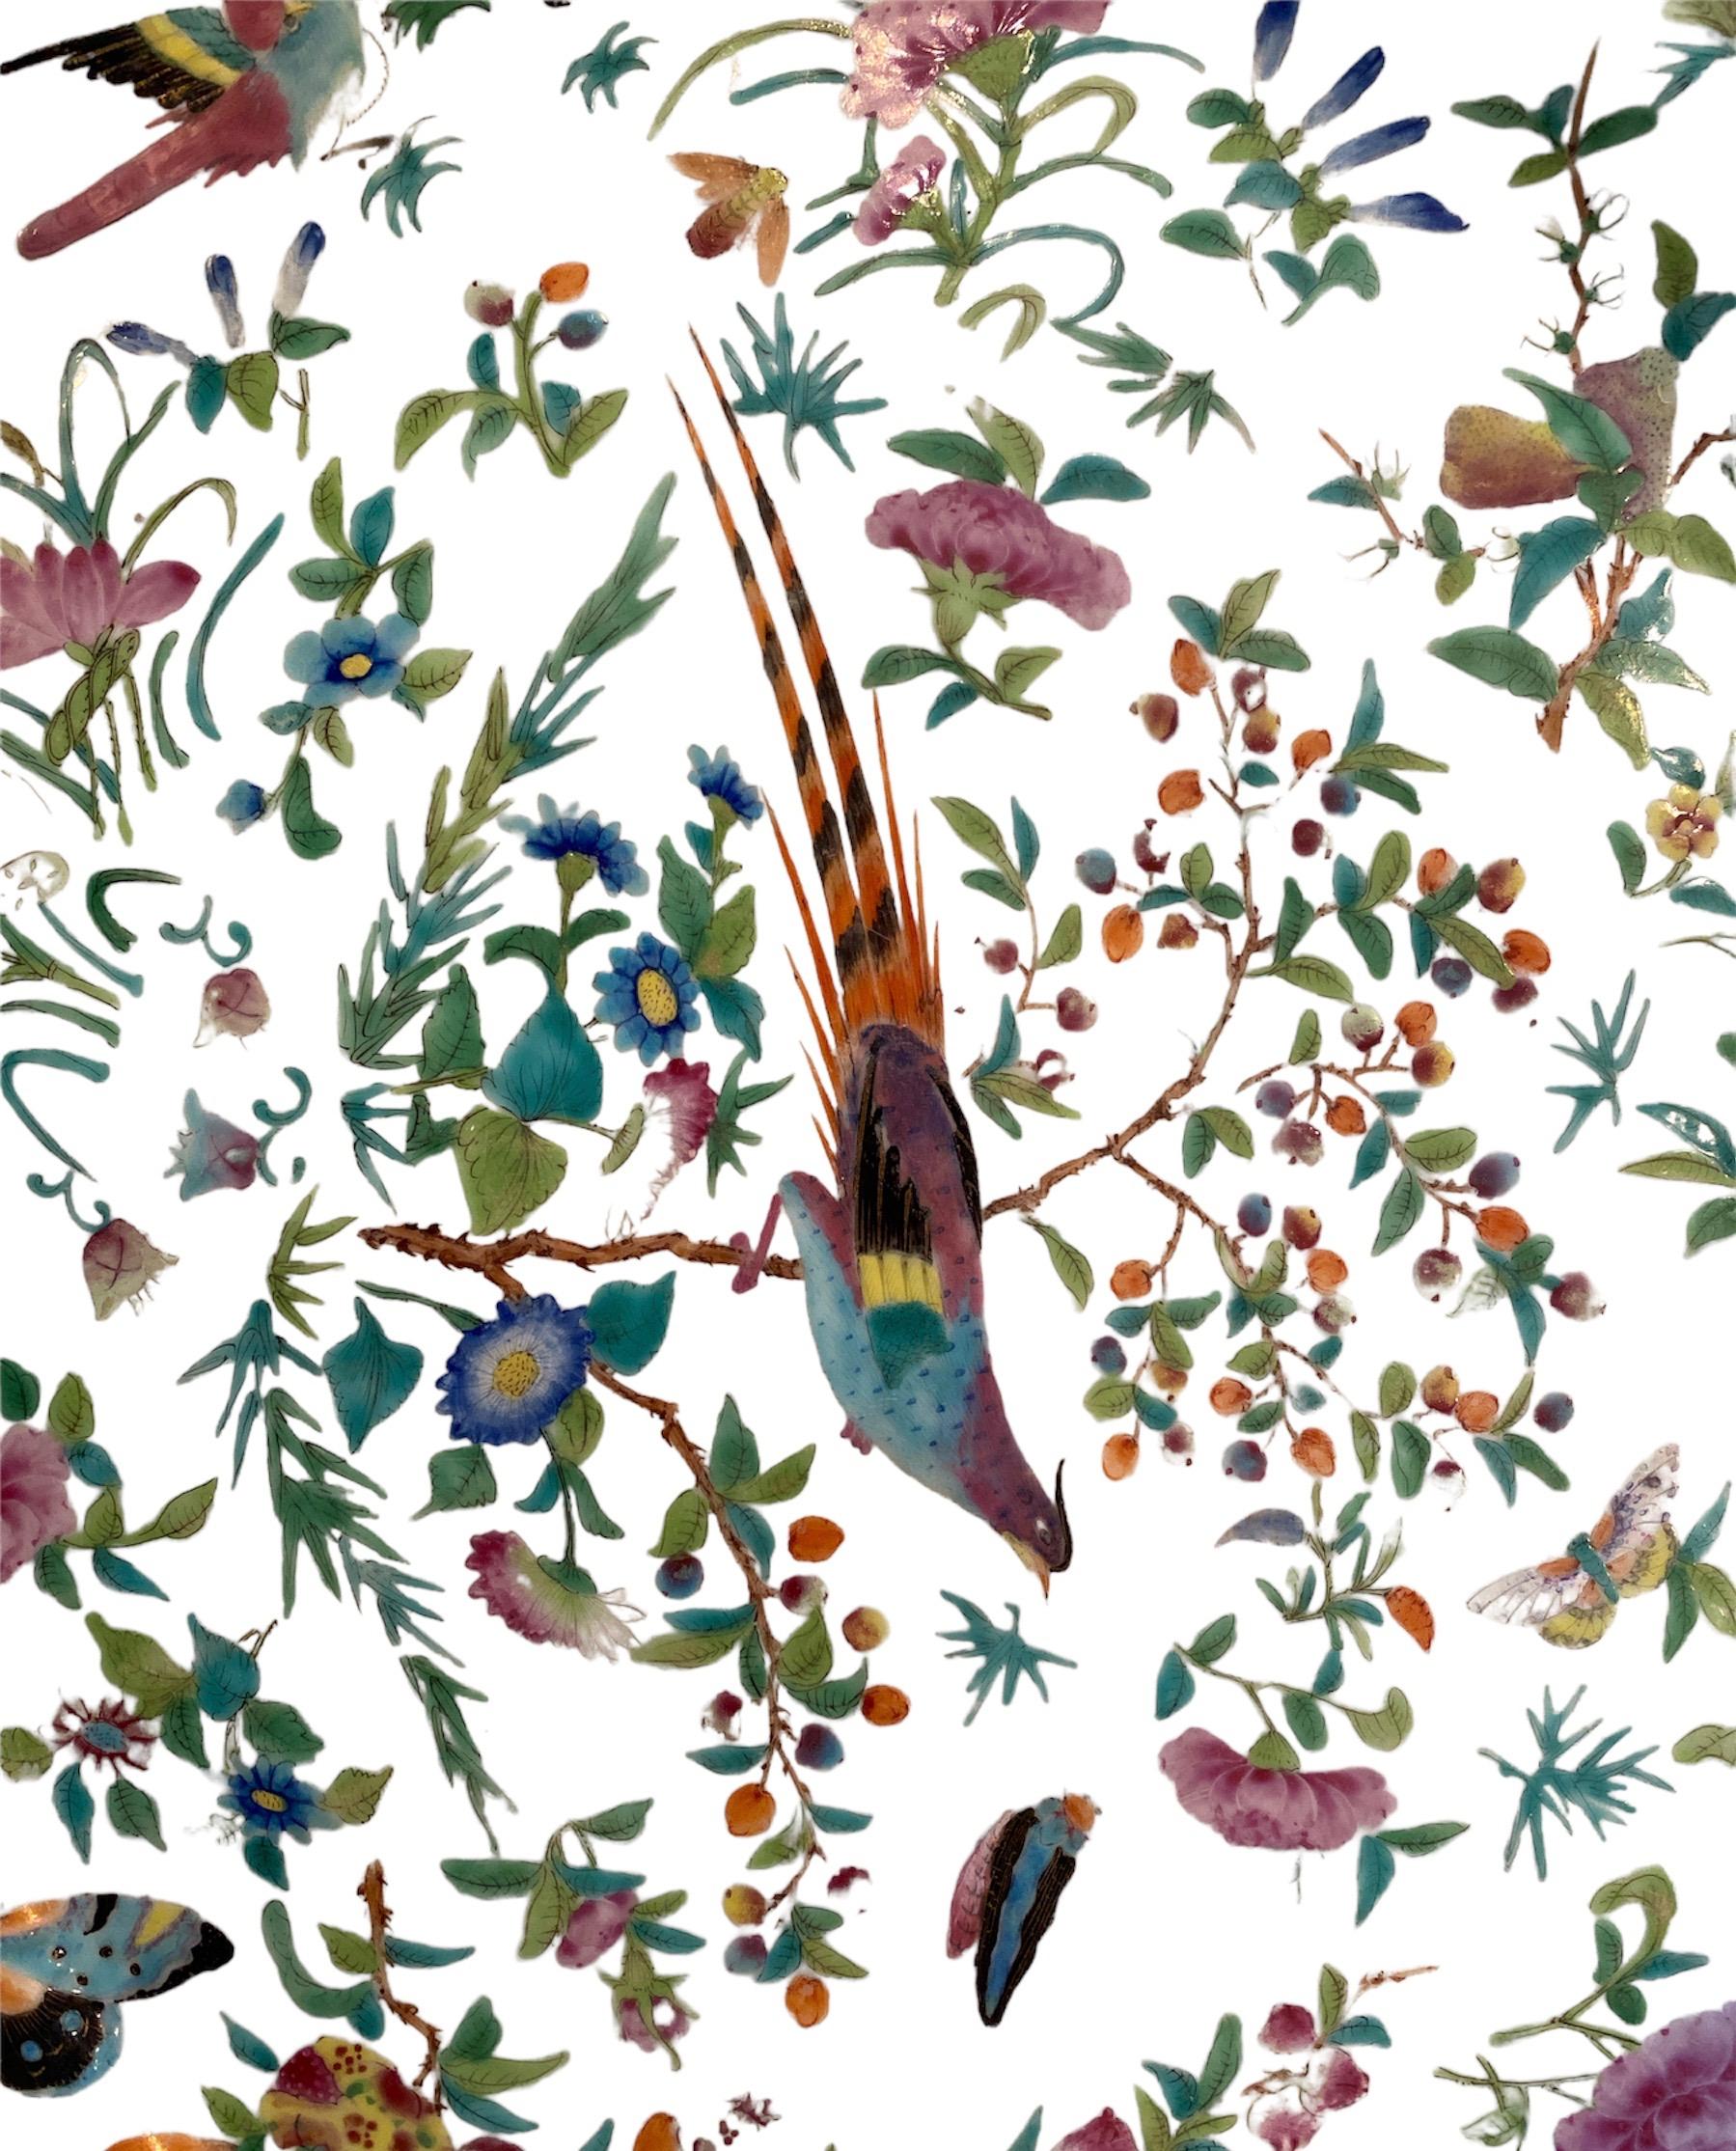 Très grand. Très détaillé. Très coloré avec des oiseaux et des papillons. Probablement de la fin du XIXe siècle aux années 1900. Excellent état pour son âge.